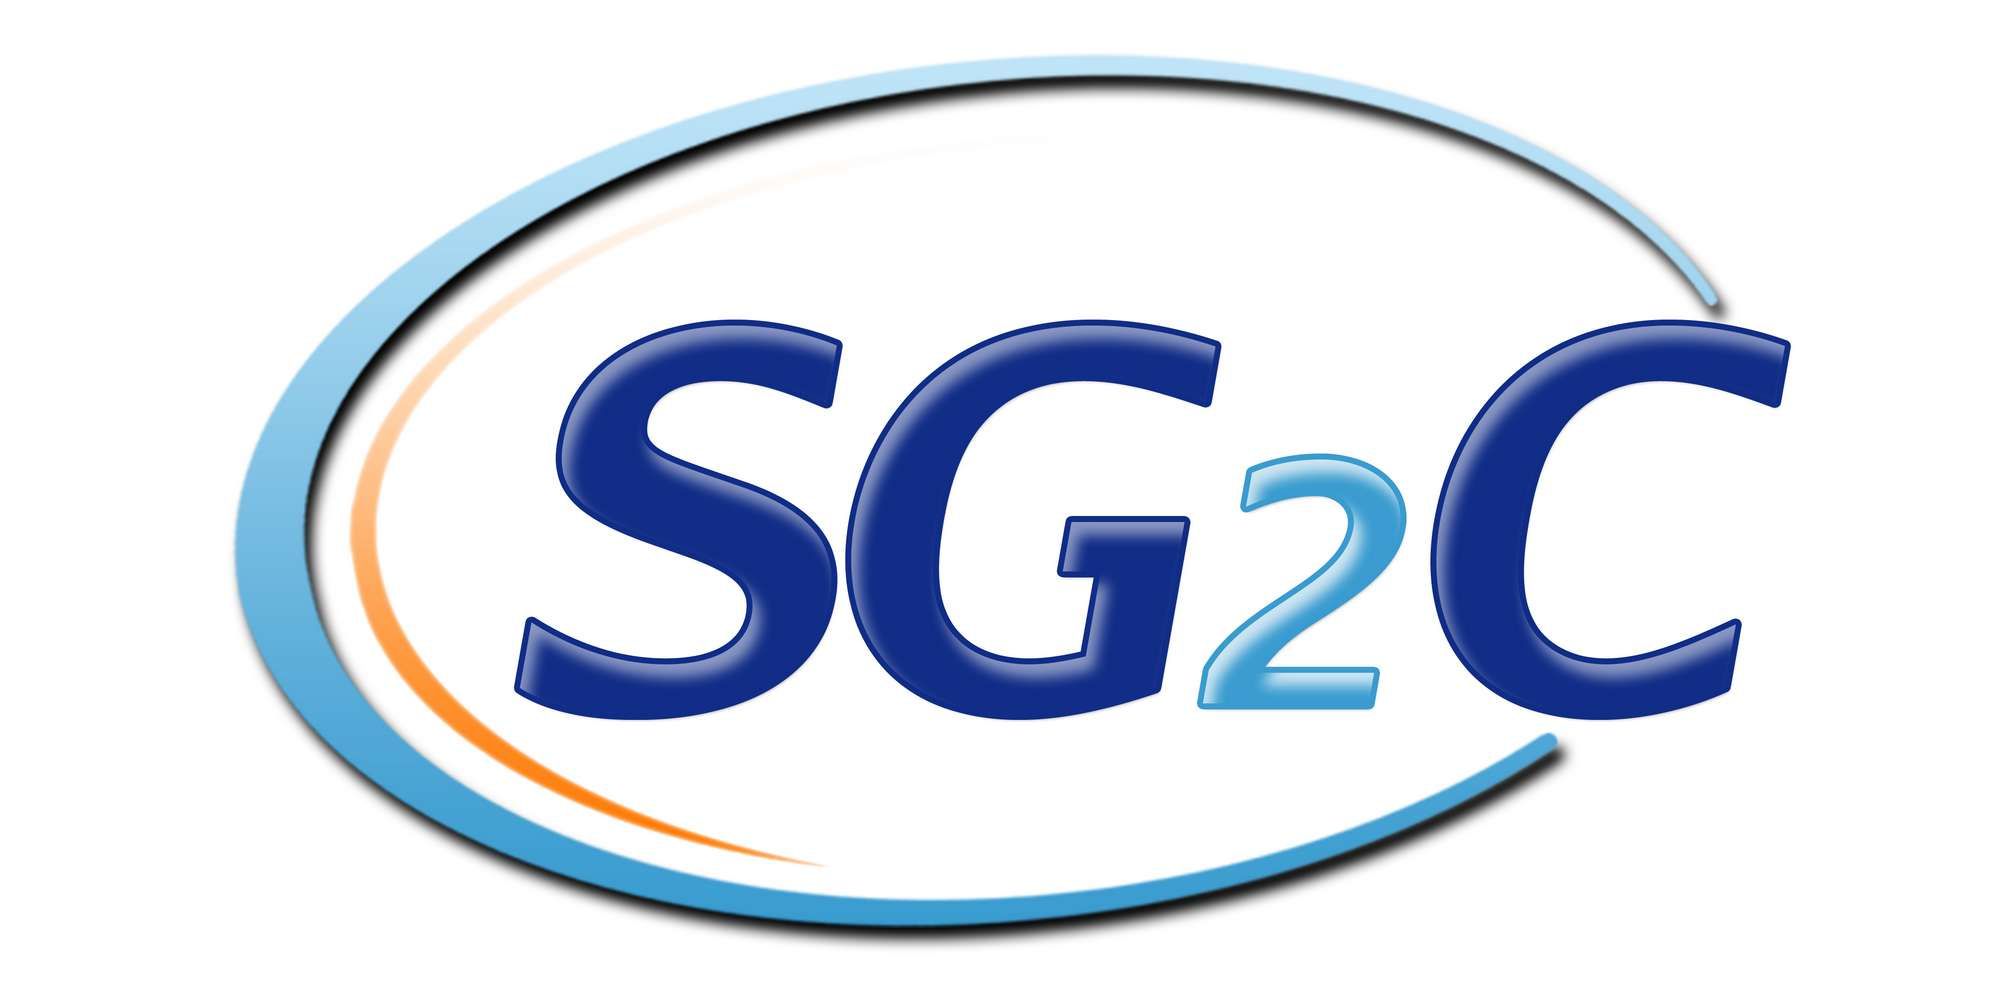 SG2C